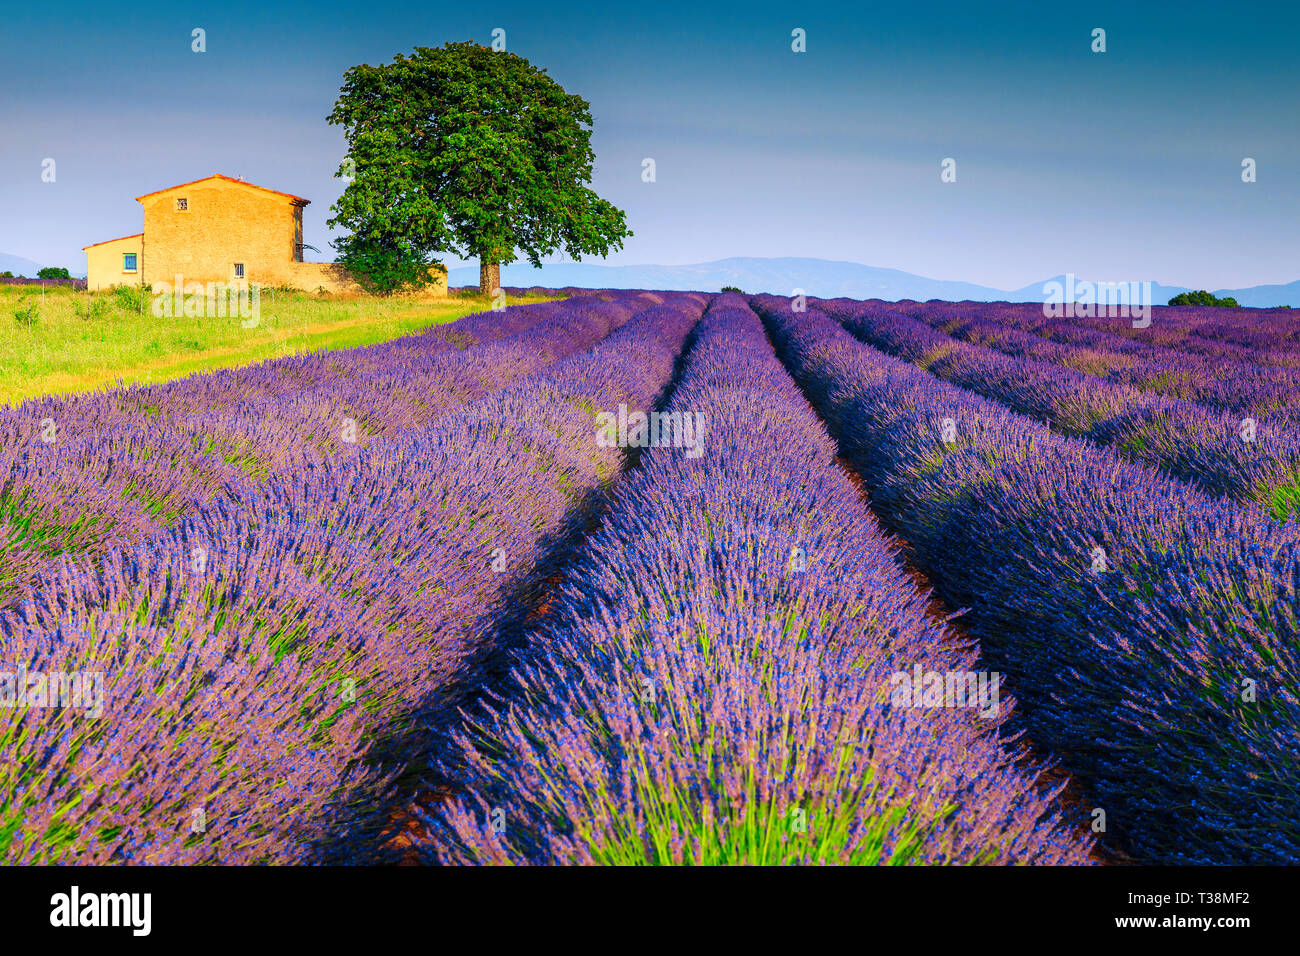 La photographie et les voyages d'été fantastique emplacement, champs de lavande violette splendide avec vieille maison en pierre, près du village de Valensole, Provence, Franc Banque D'Images